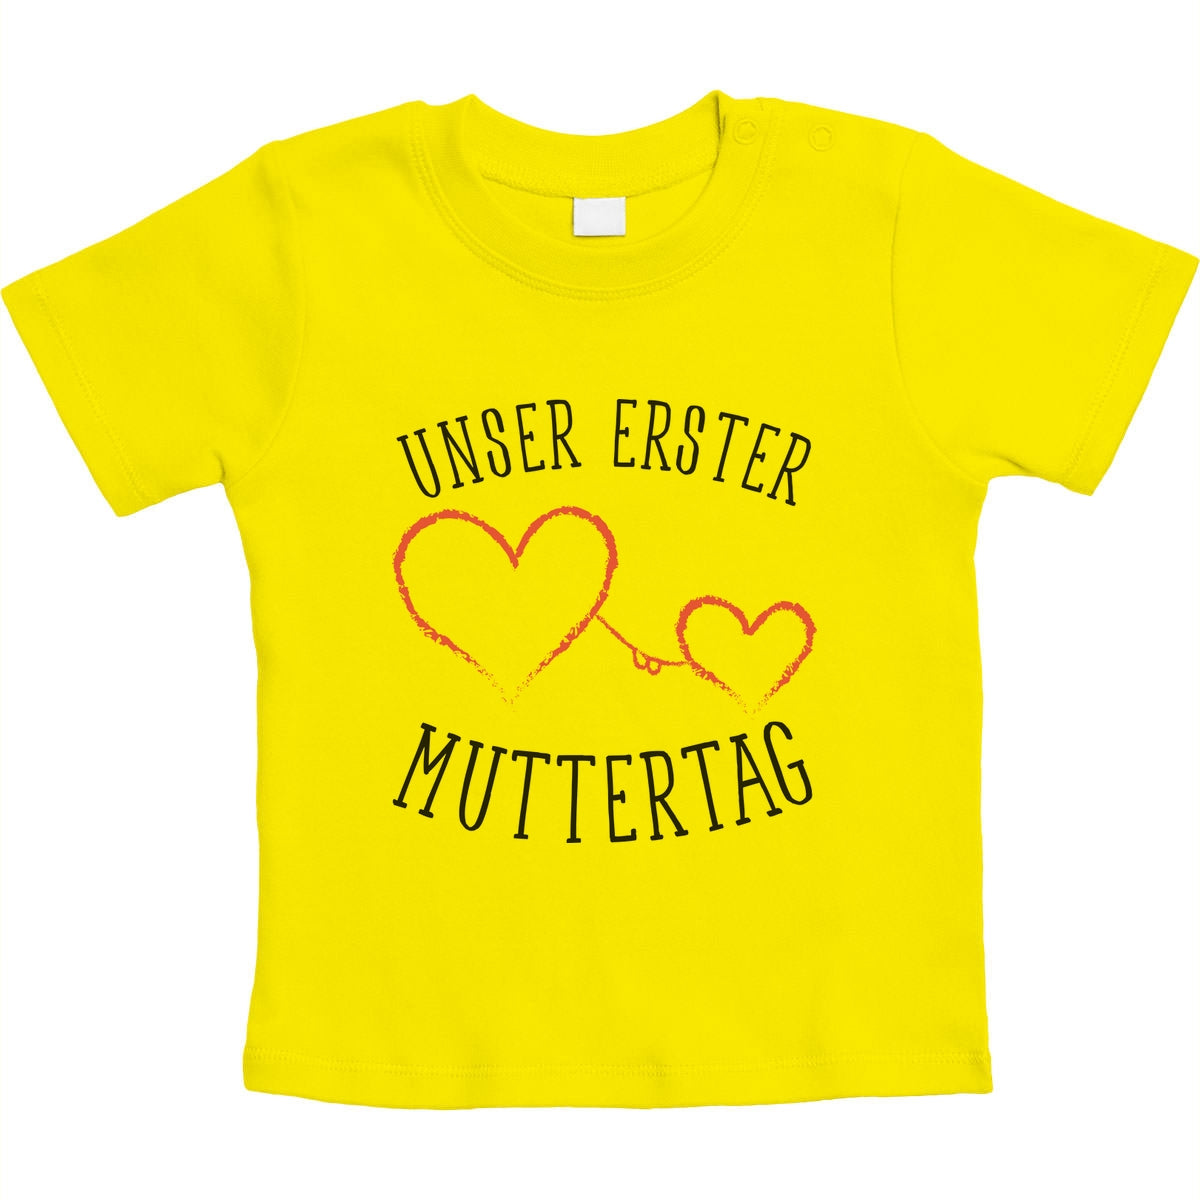 Unser erster Muttertag - Partnergeschenk Baby Unisex Baby T-Shirt Gr. 66-93